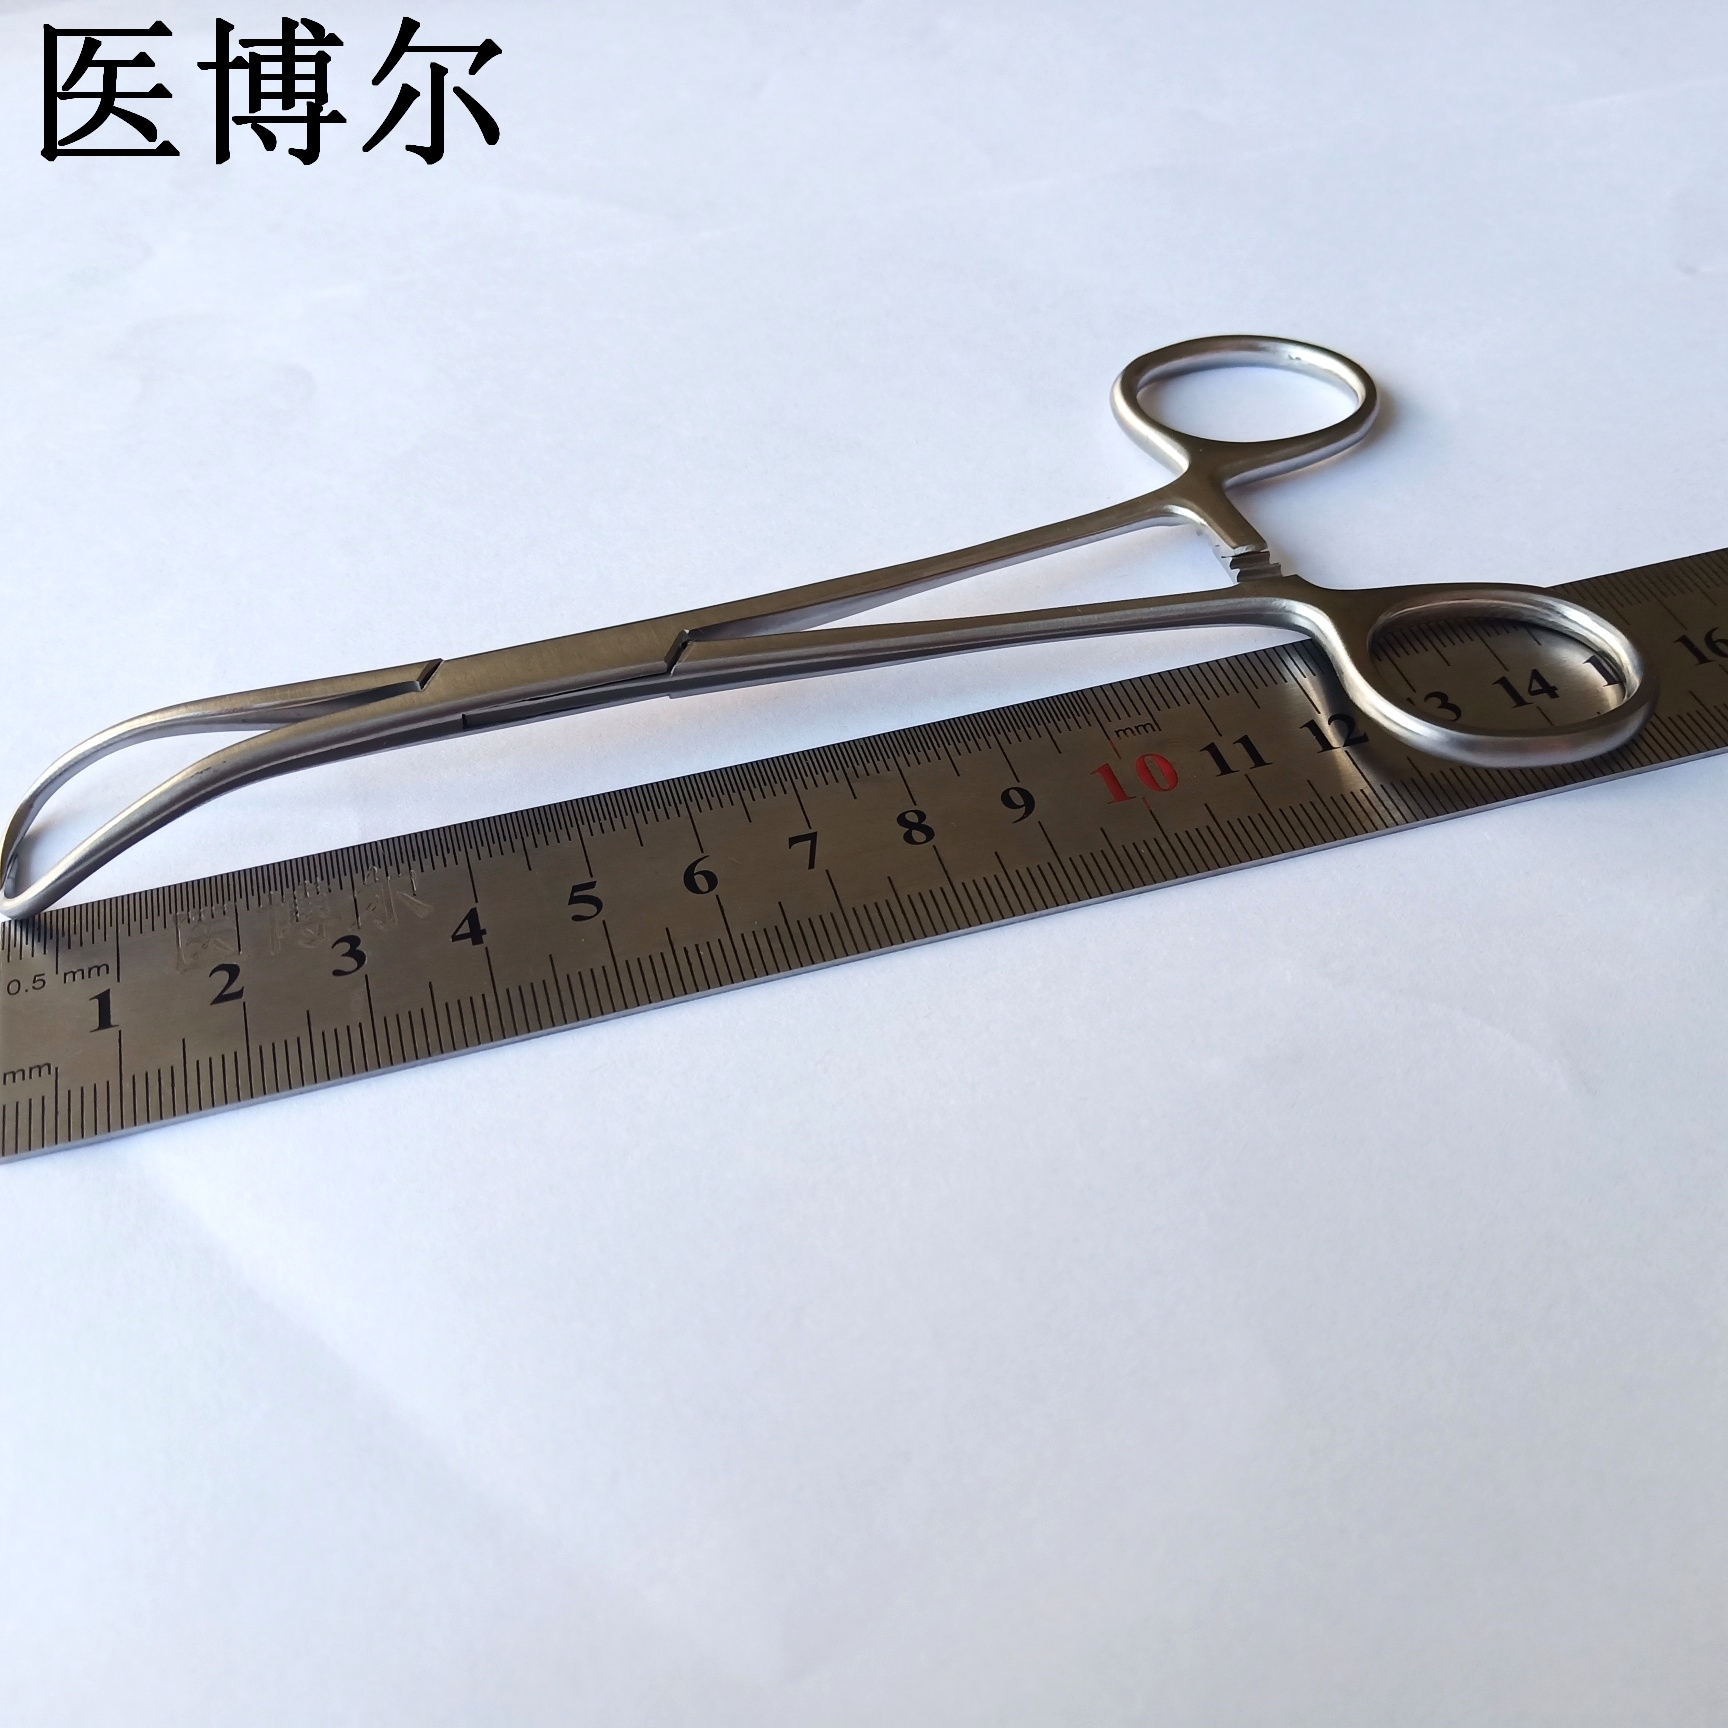 帕巾钳 15.5cm (1)_看图王.jpg